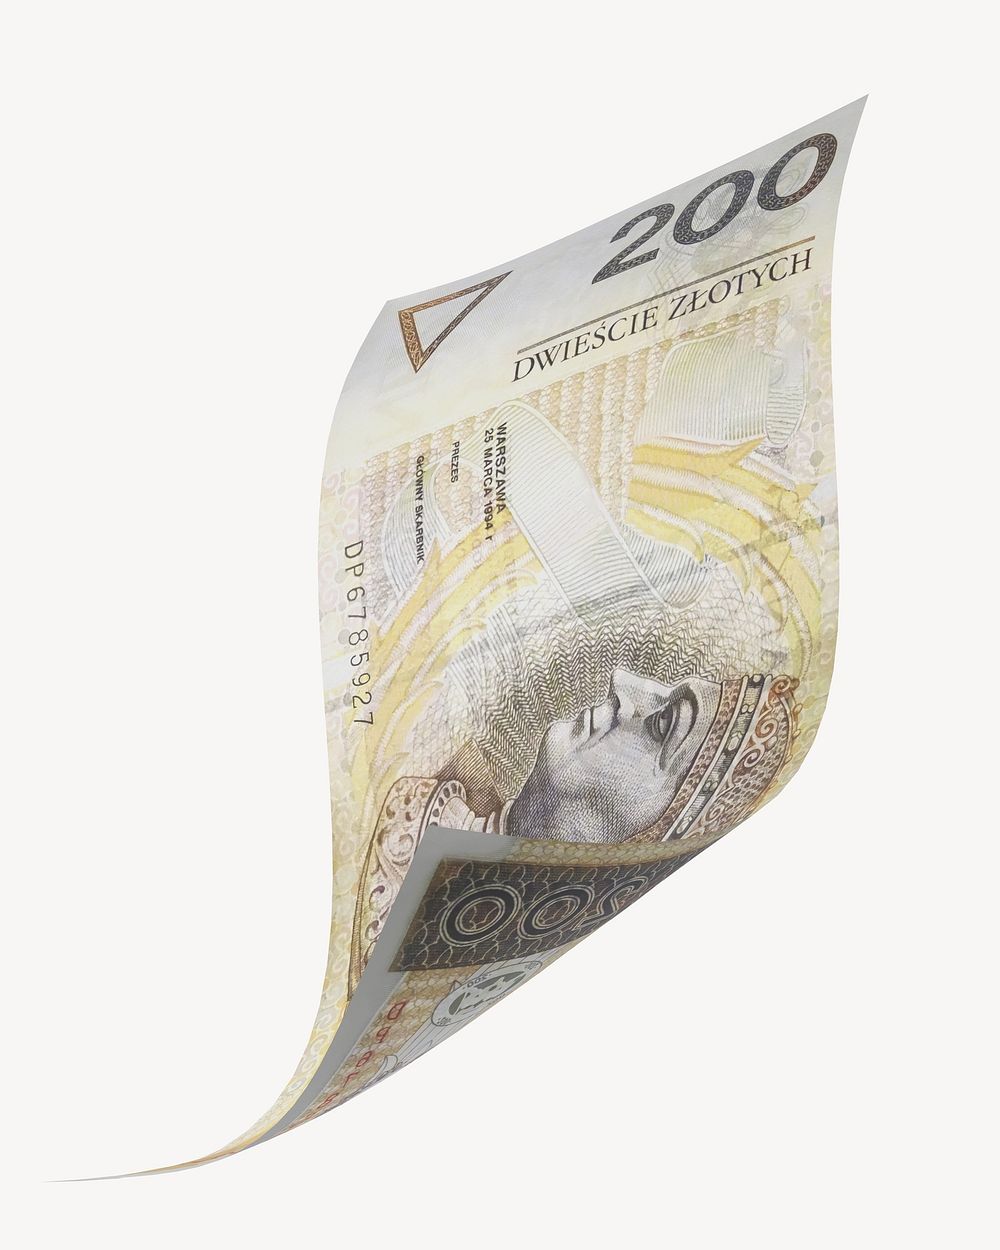 200 Poland złotych bank note